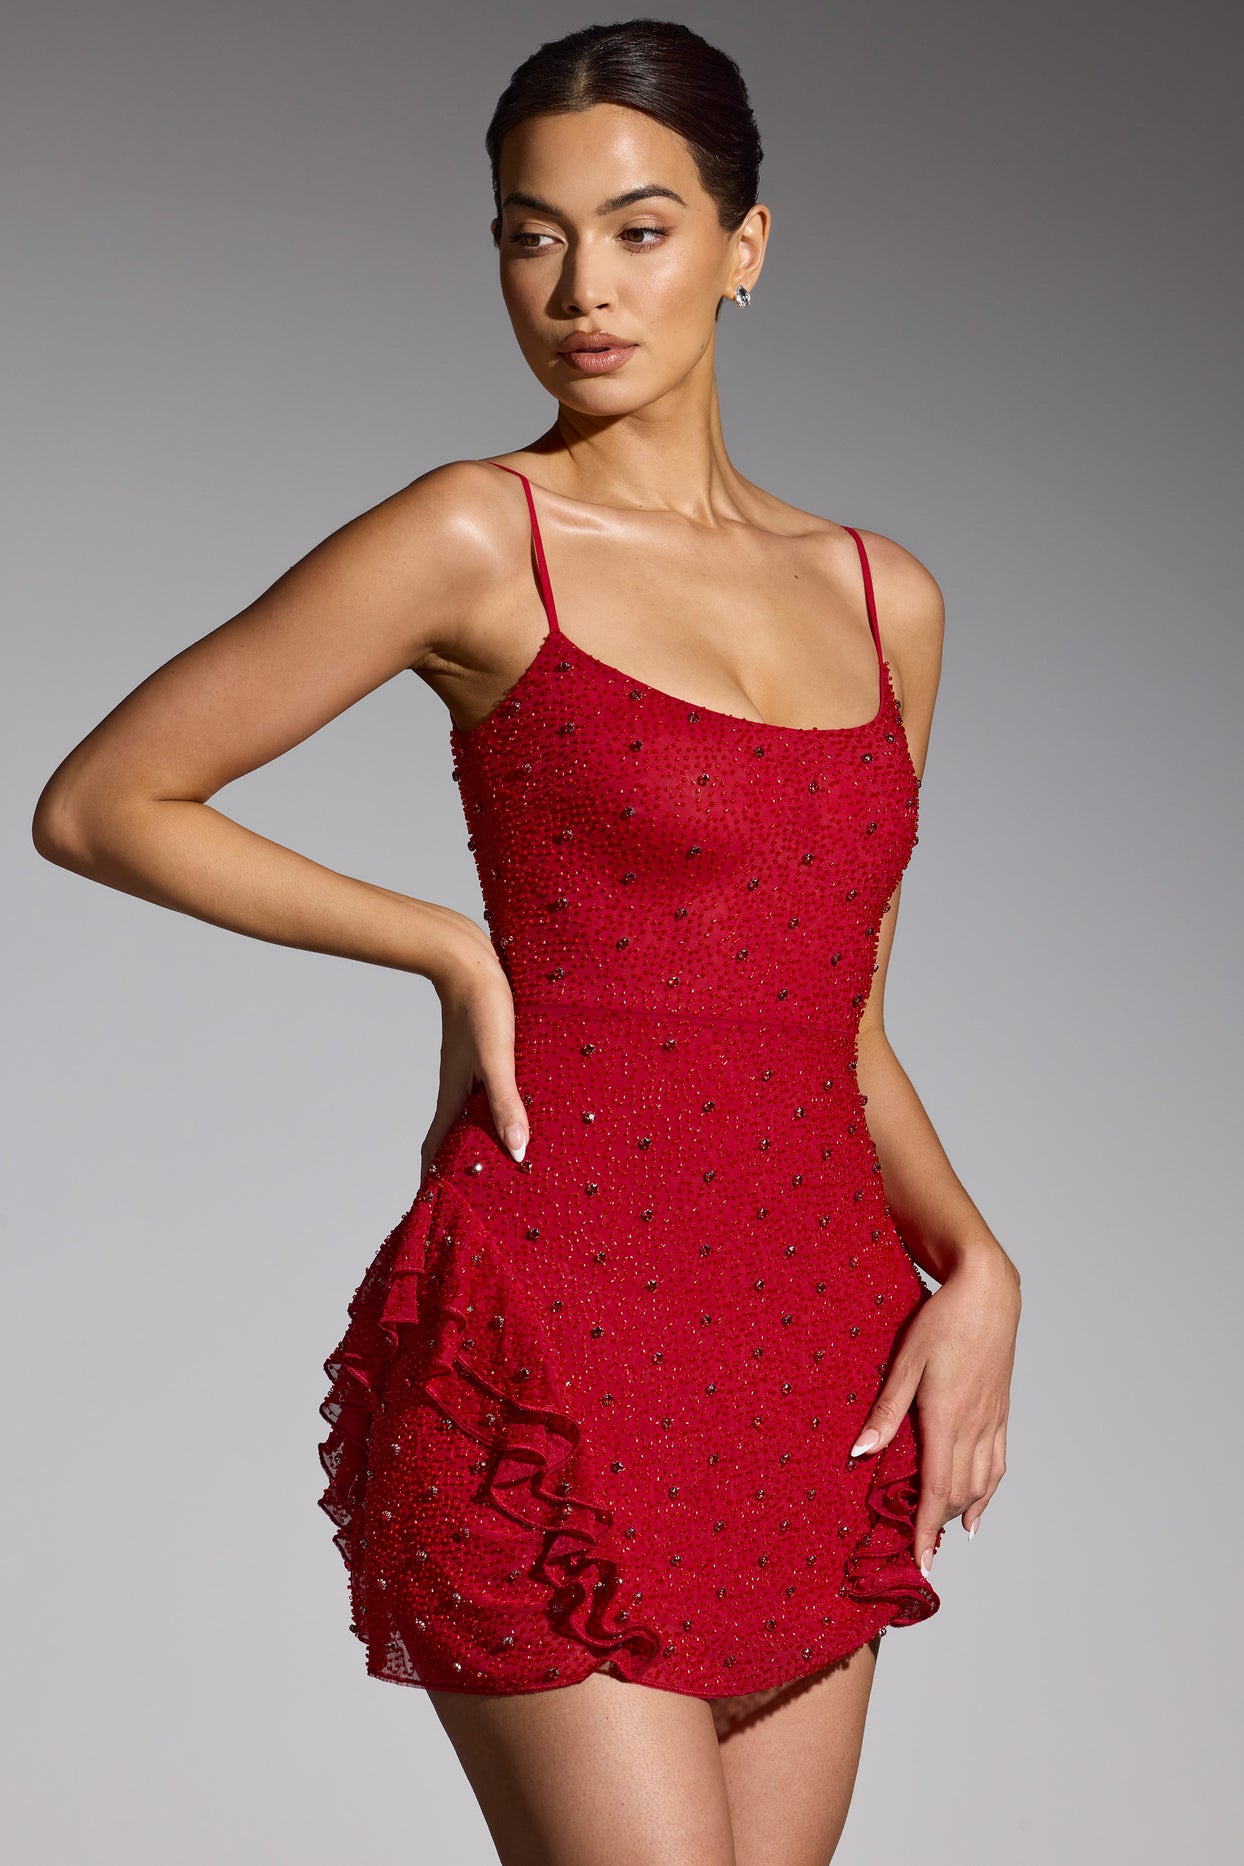 Mini-robe ornée à volants en rouge